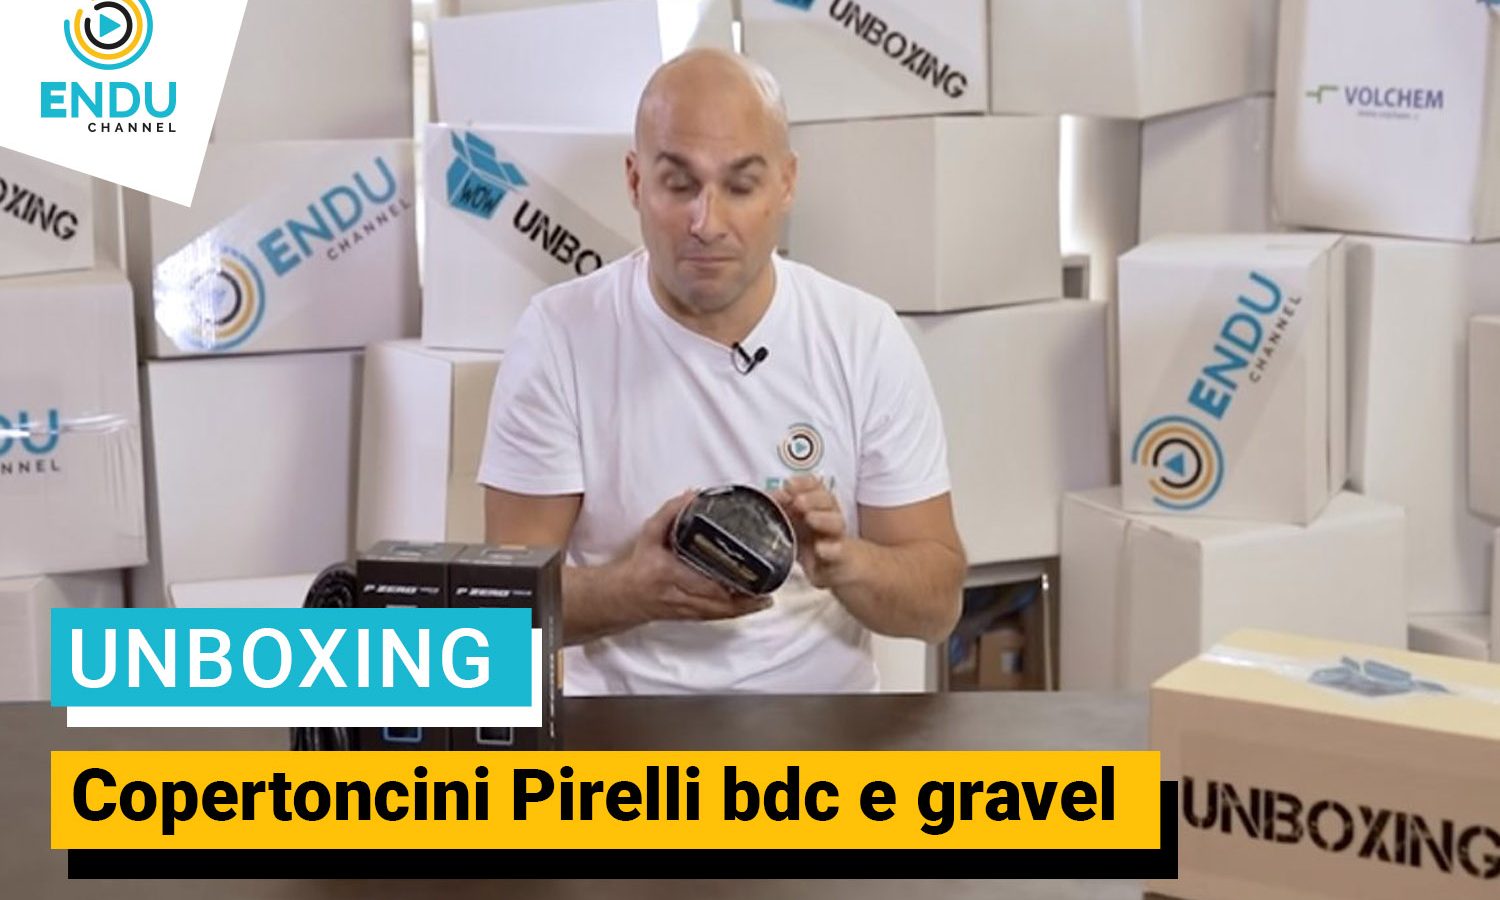 La tecnologia Pirelli, estate o inverno: Unboxing copertoncini BDC o gravel